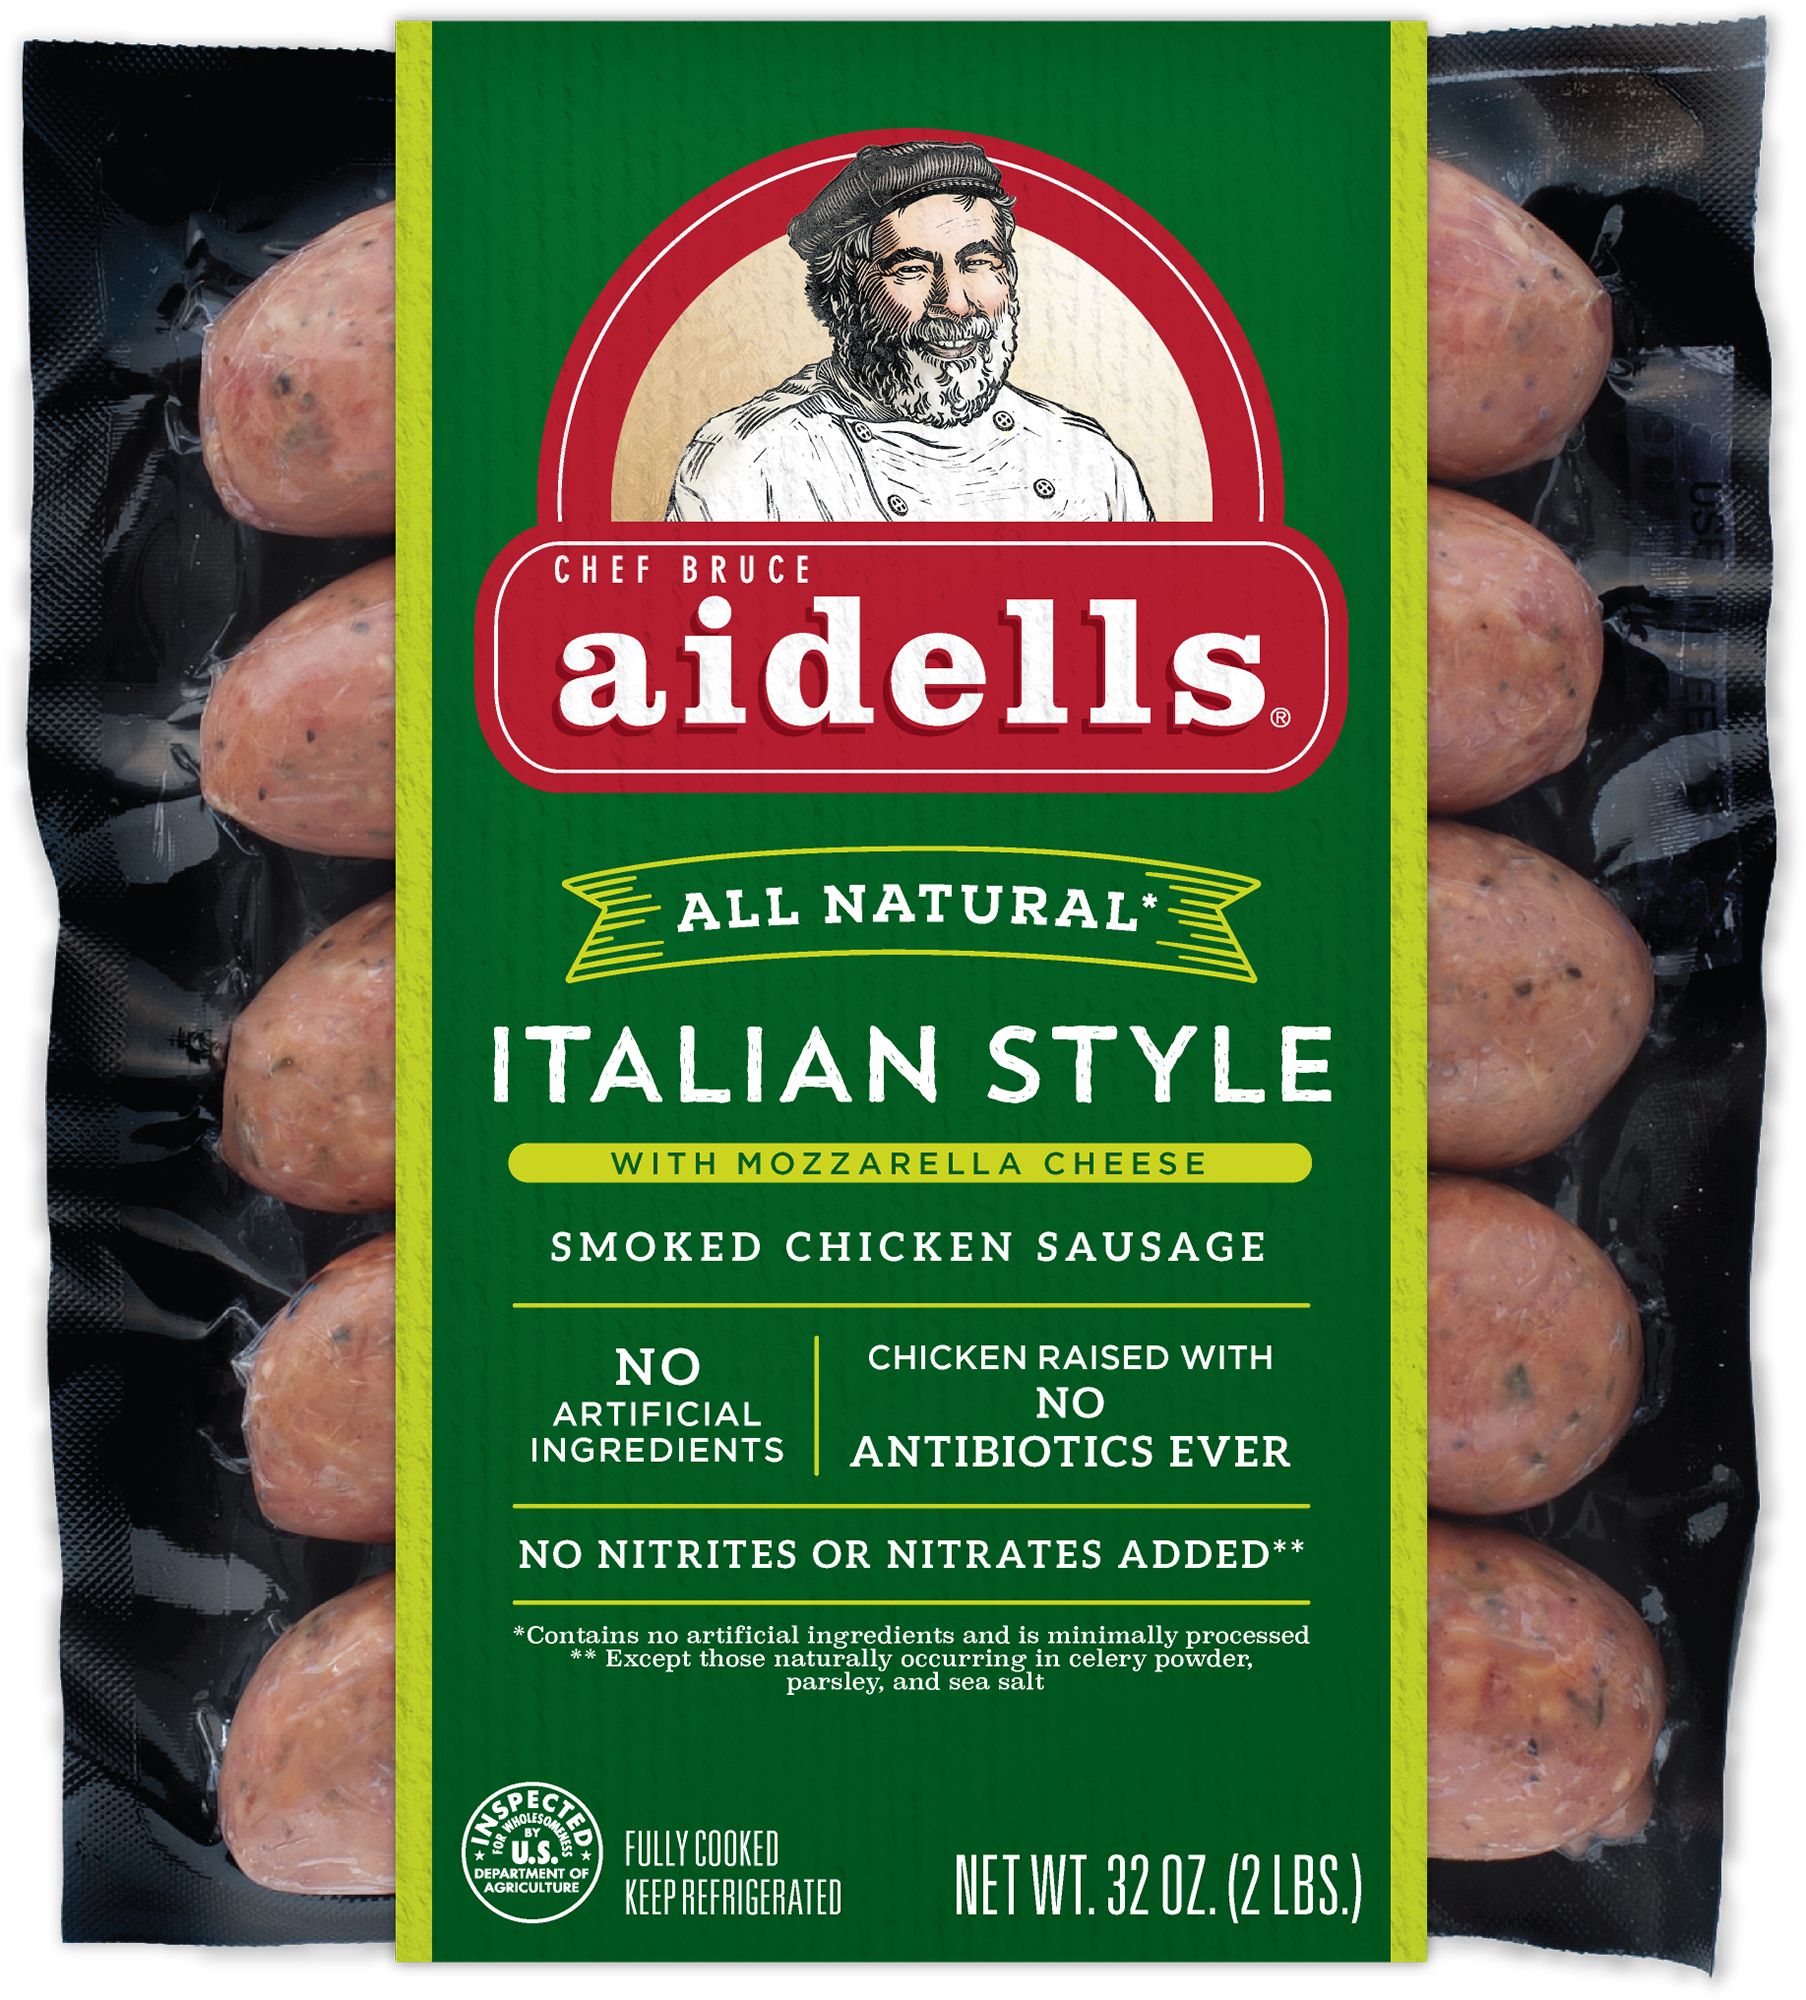 Aidells Italian Style Smoked Chicken Sausage with Mozzarella Cheese, 32 oz.